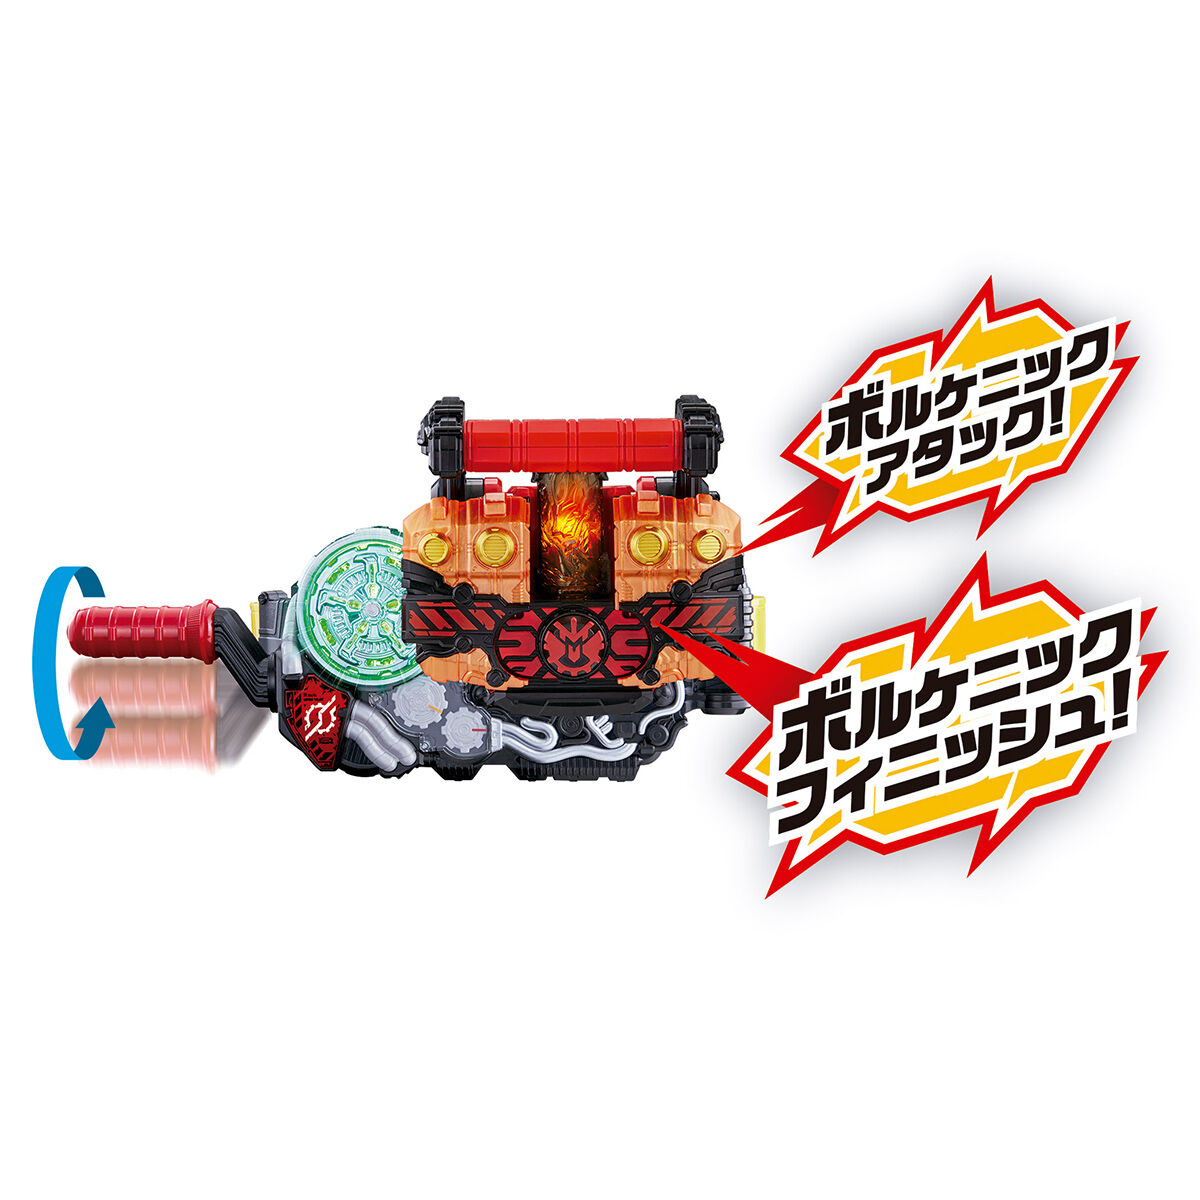 SUPER BEST DXクローズマグマナックル | 仮面ライダービルド おもちゃ